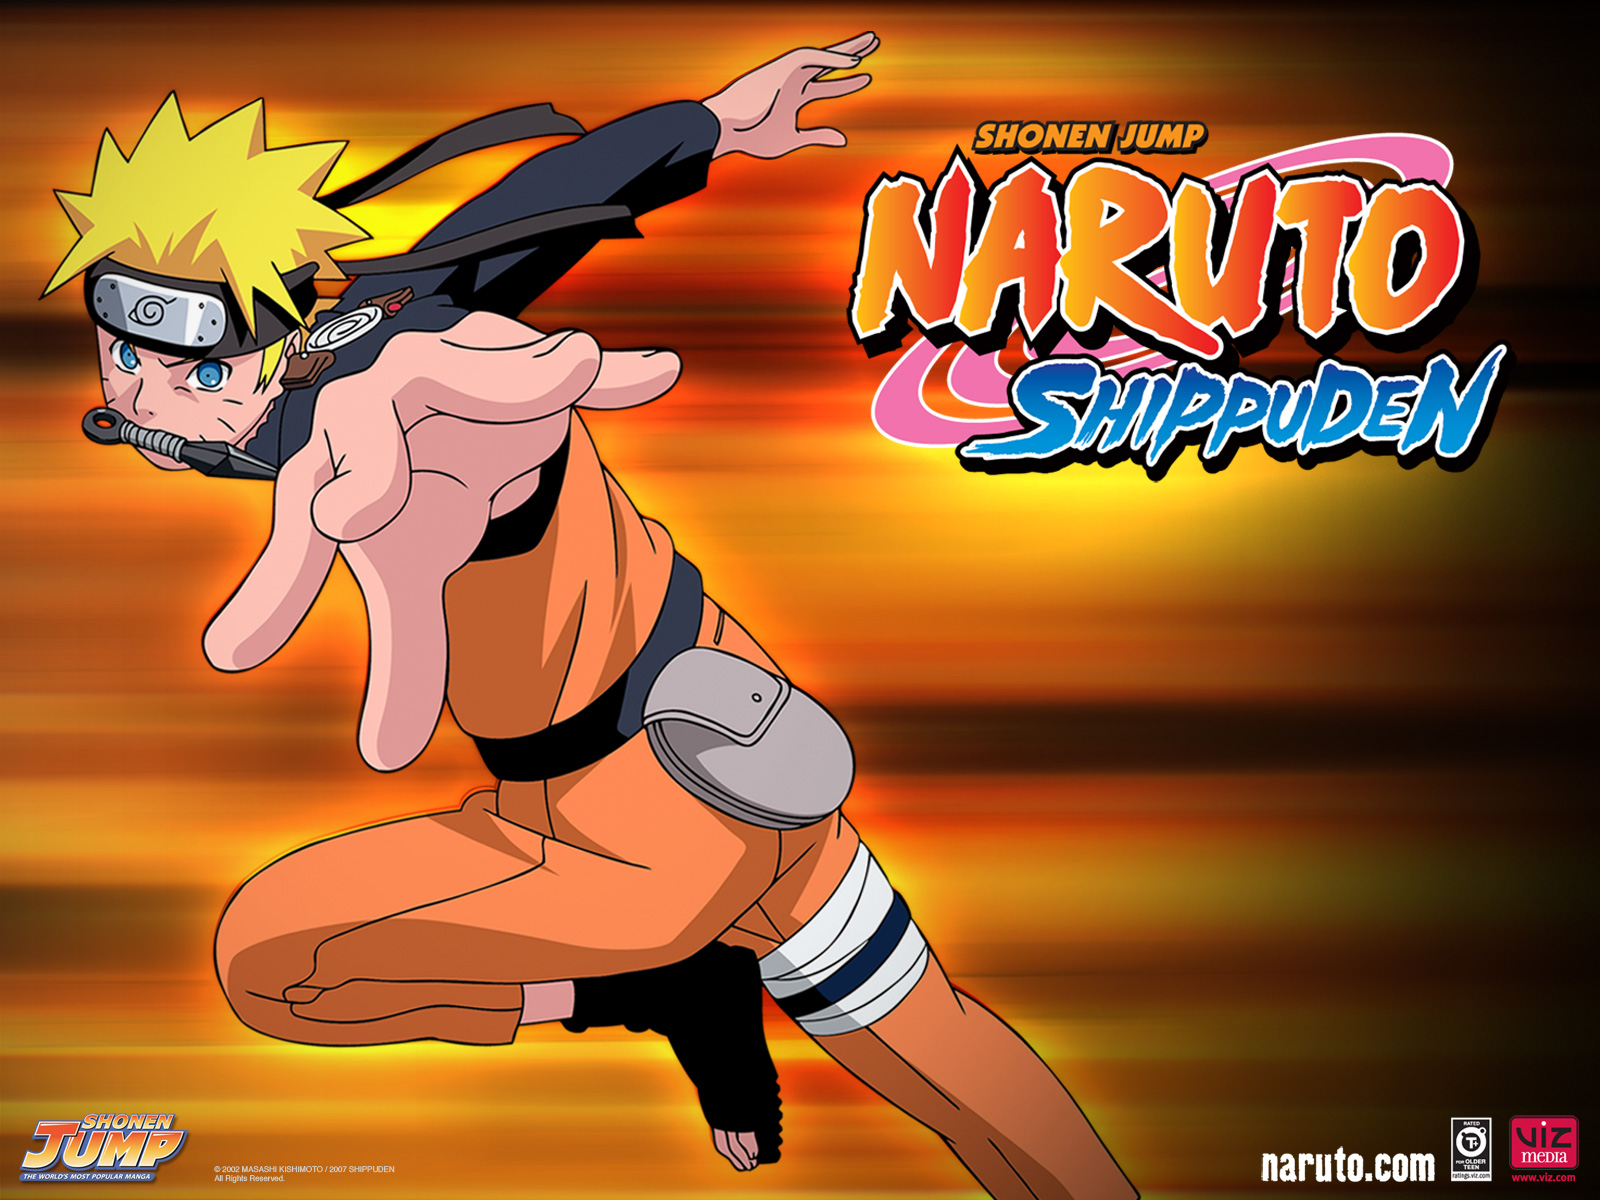 Naruto Shippuden season 9  Wikipedia